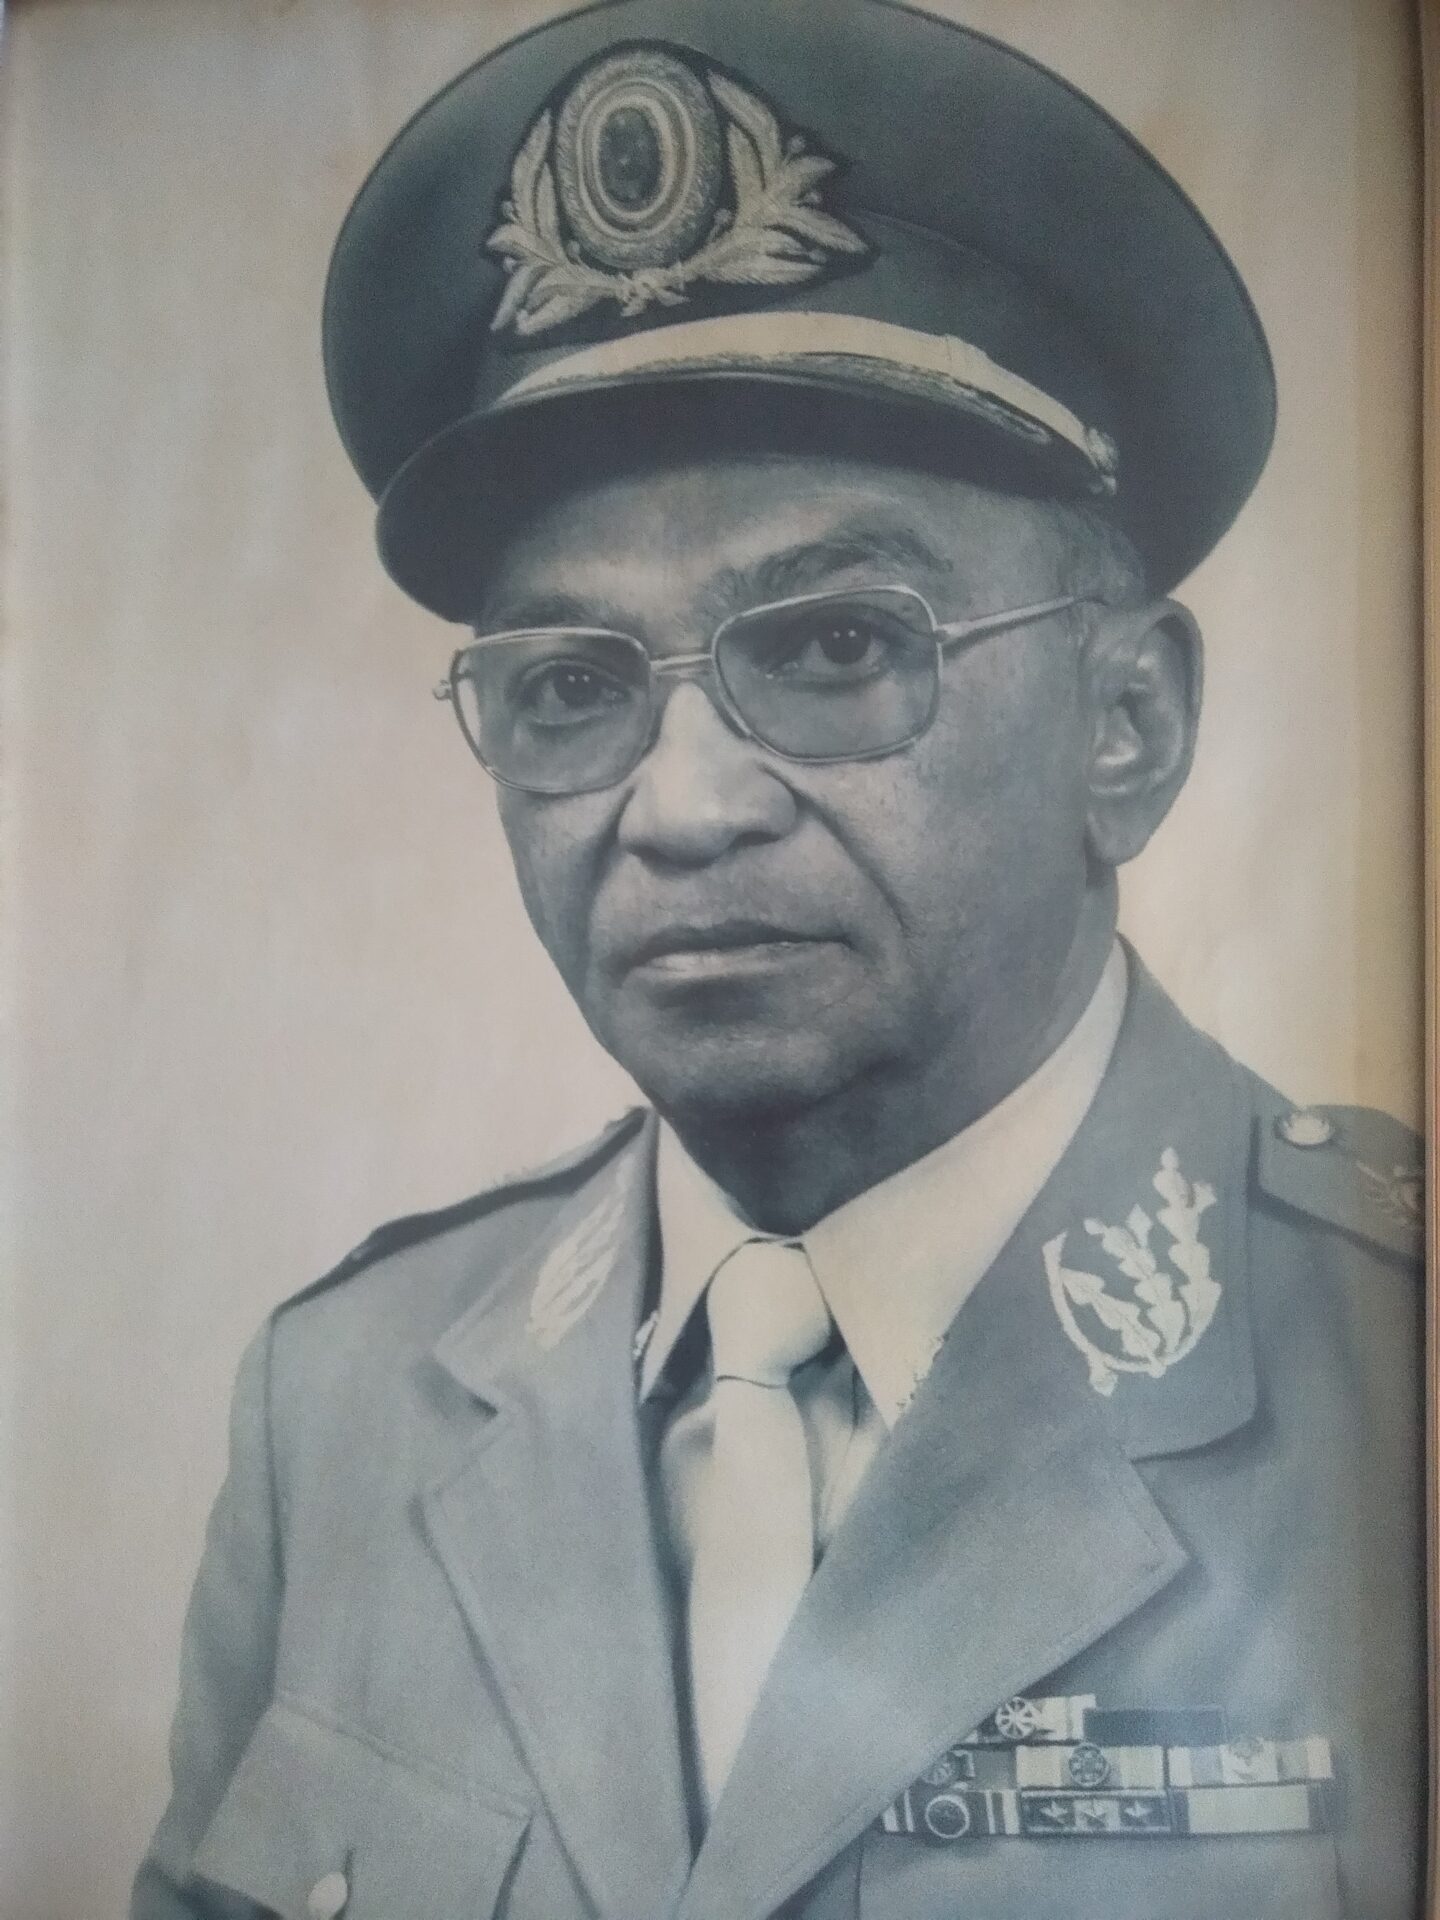 Octavio Mendes de Oliveira, promovido em 1975 a general de brigada. Foto: Arquivo familiar